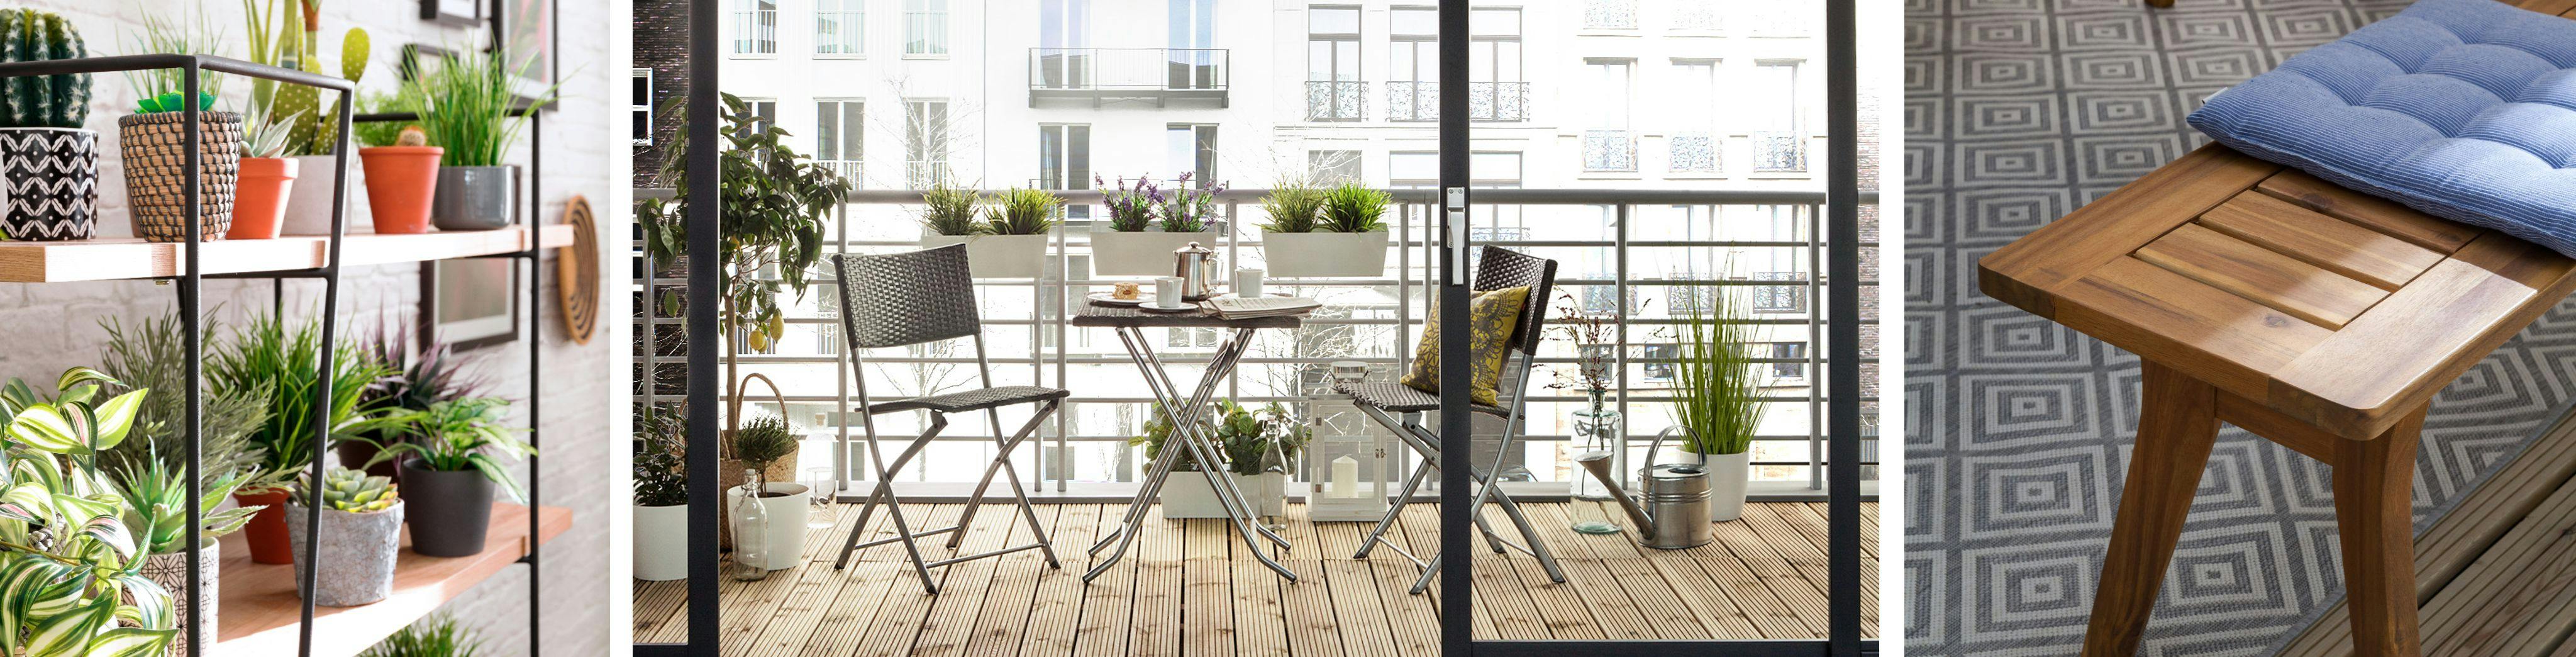 Aménager un petit balcon : idées, astuces et inspirations - Côté Maison